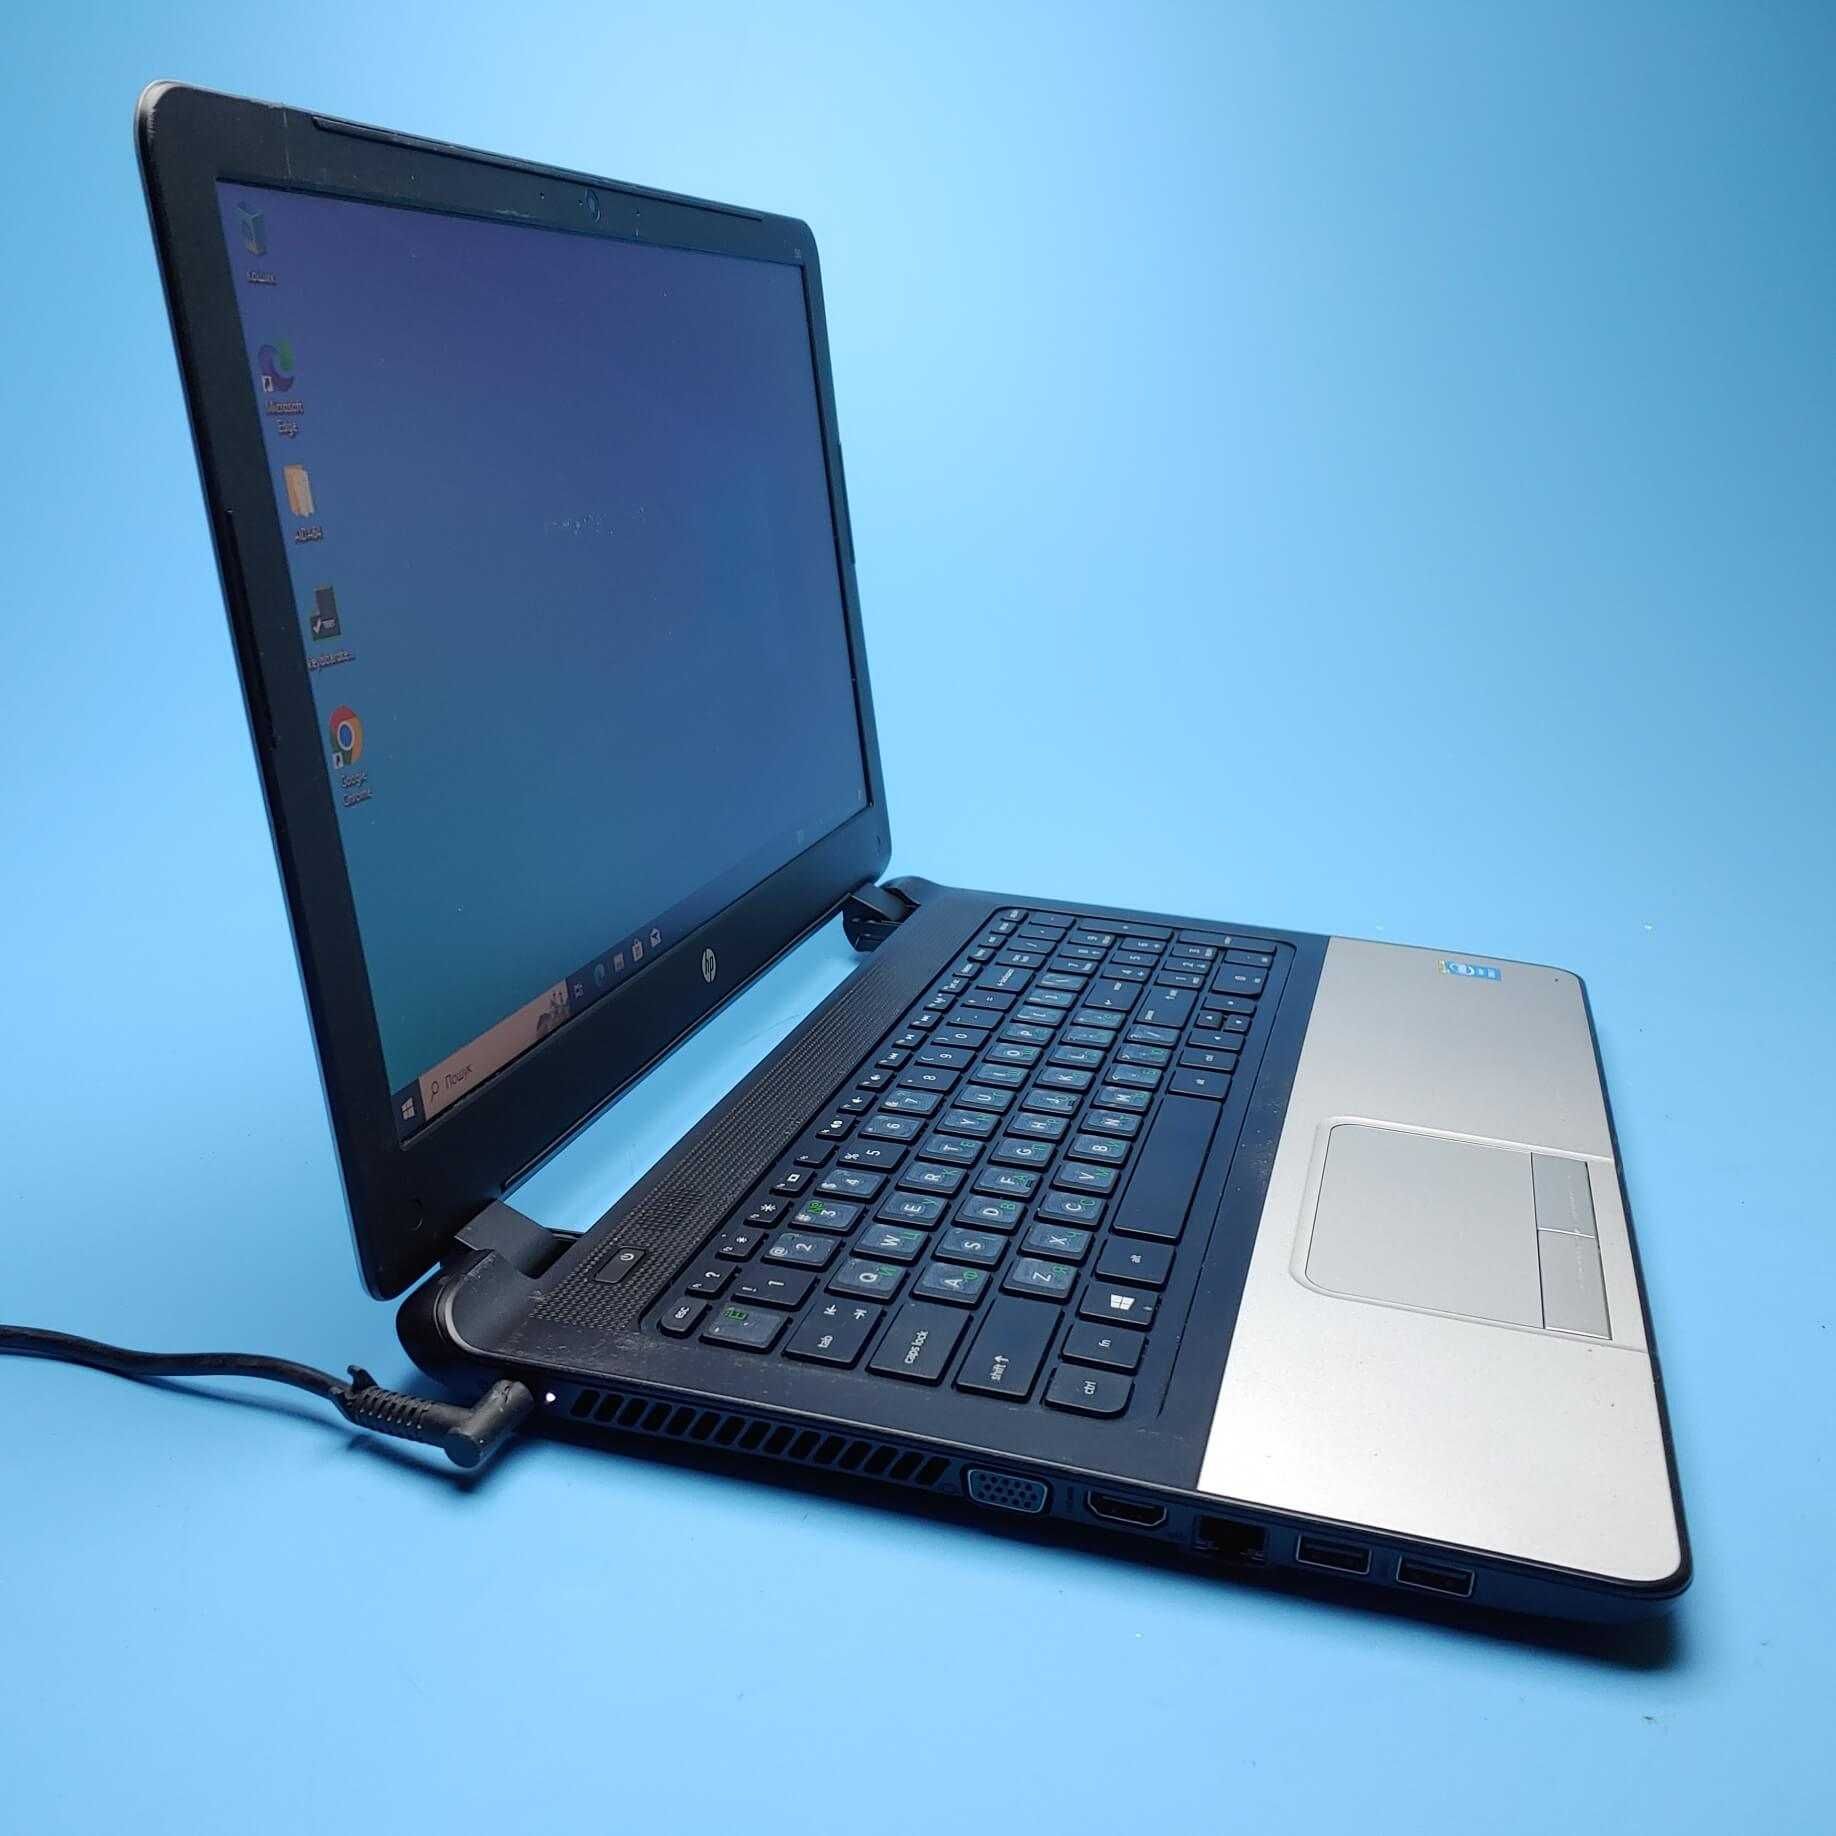 Ноутбук HP 350 G1 (i7-4500U/RAM 8GB DDR3/SSD 480GB) Б/В (6917)